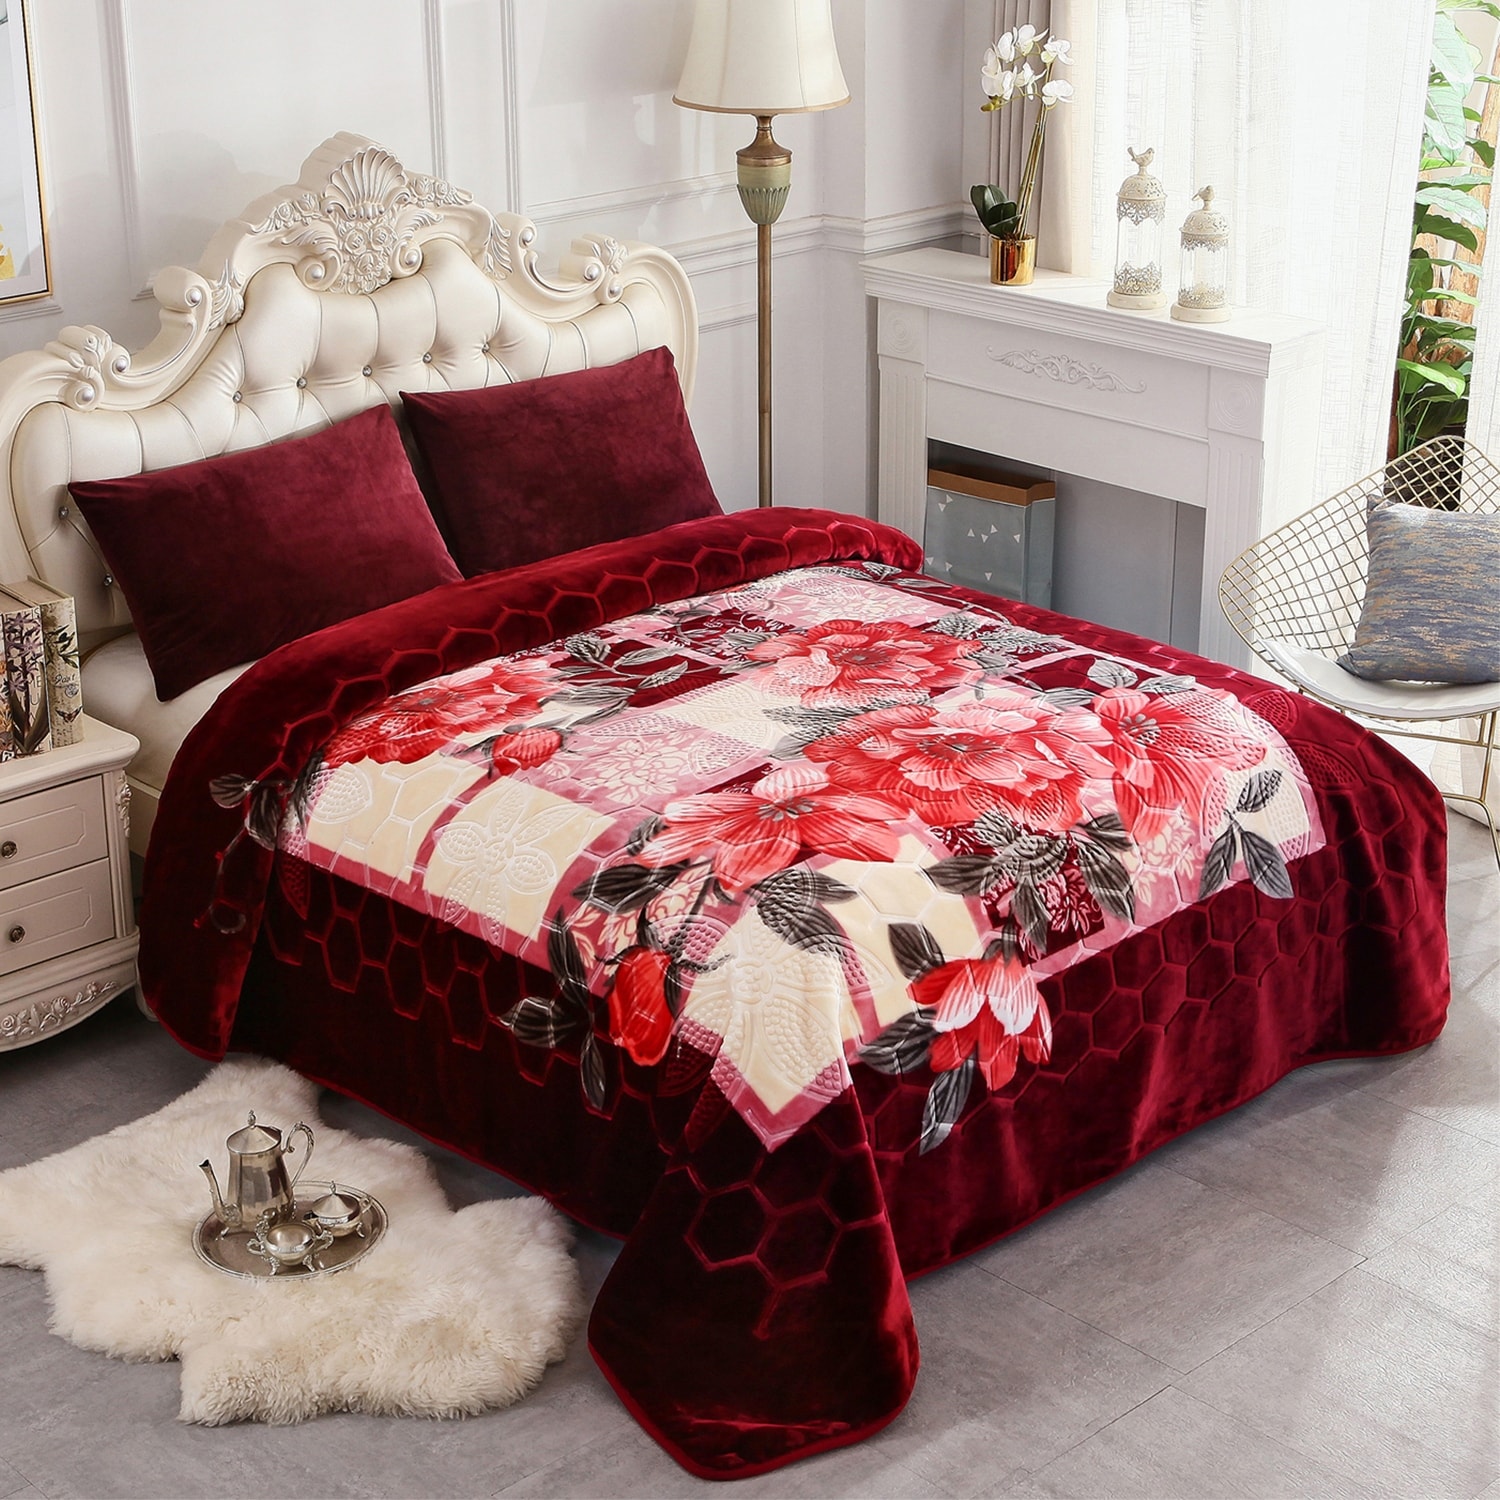 Heavy Korean Mink Fleece King Size Blanket - On Sale - Bed Bath & Beyond -  30899050